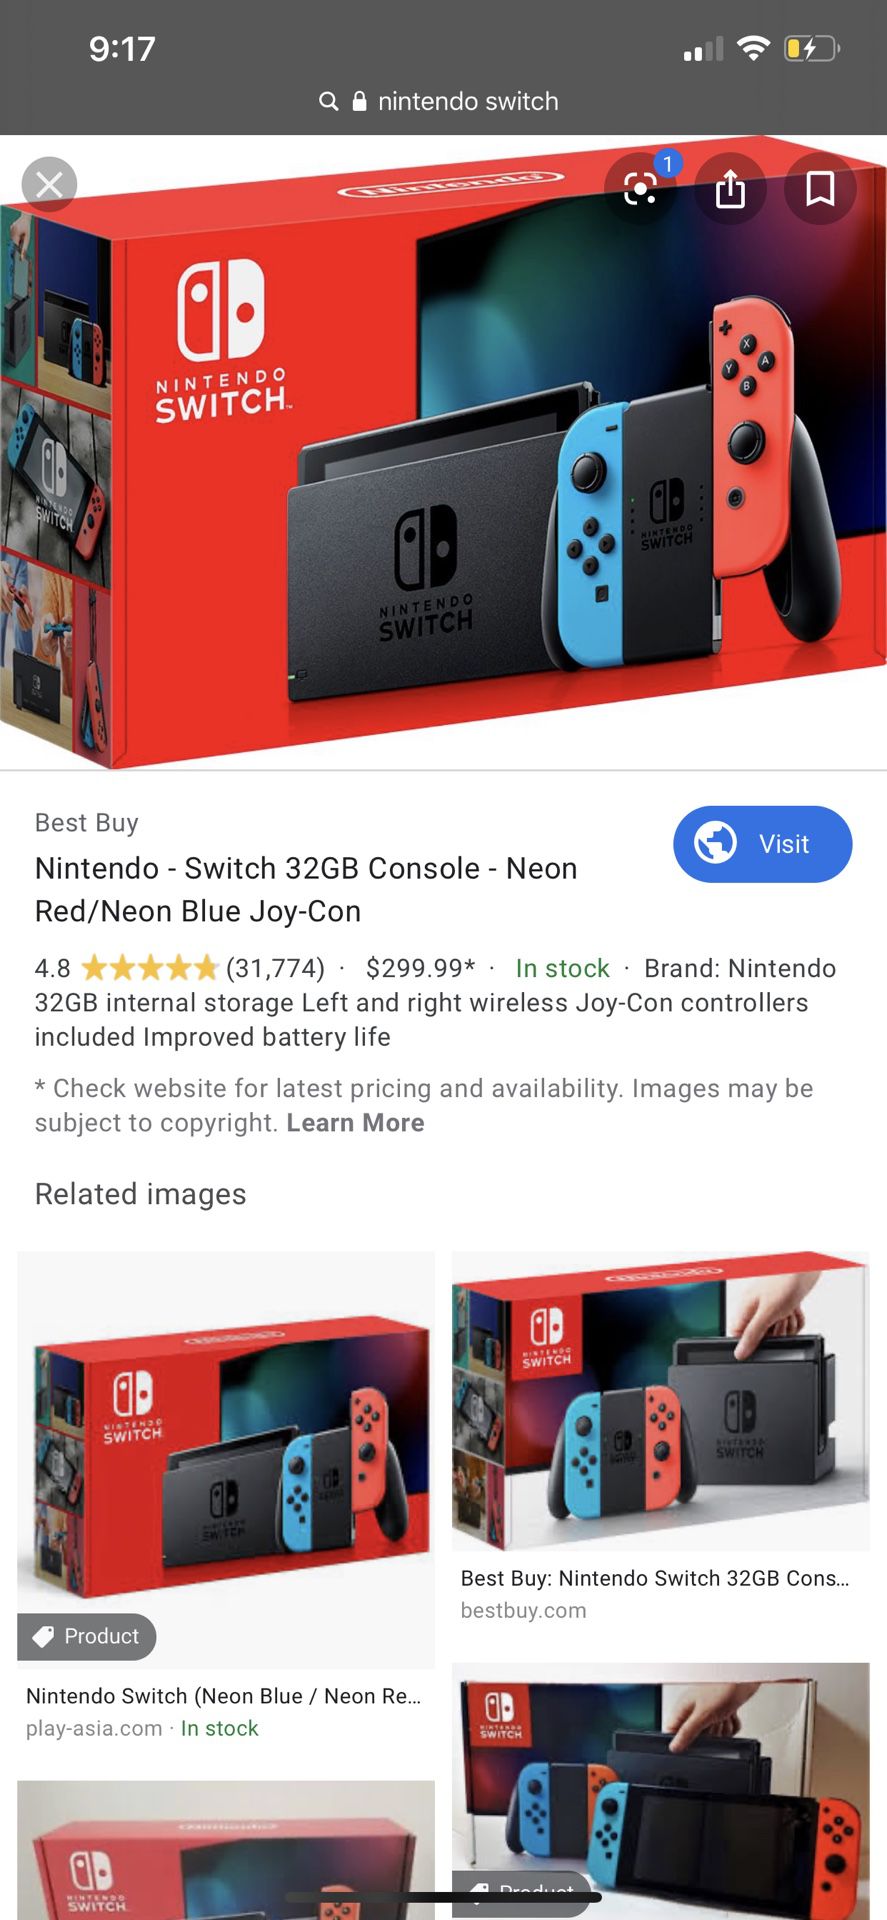 Buying Nintendo switches